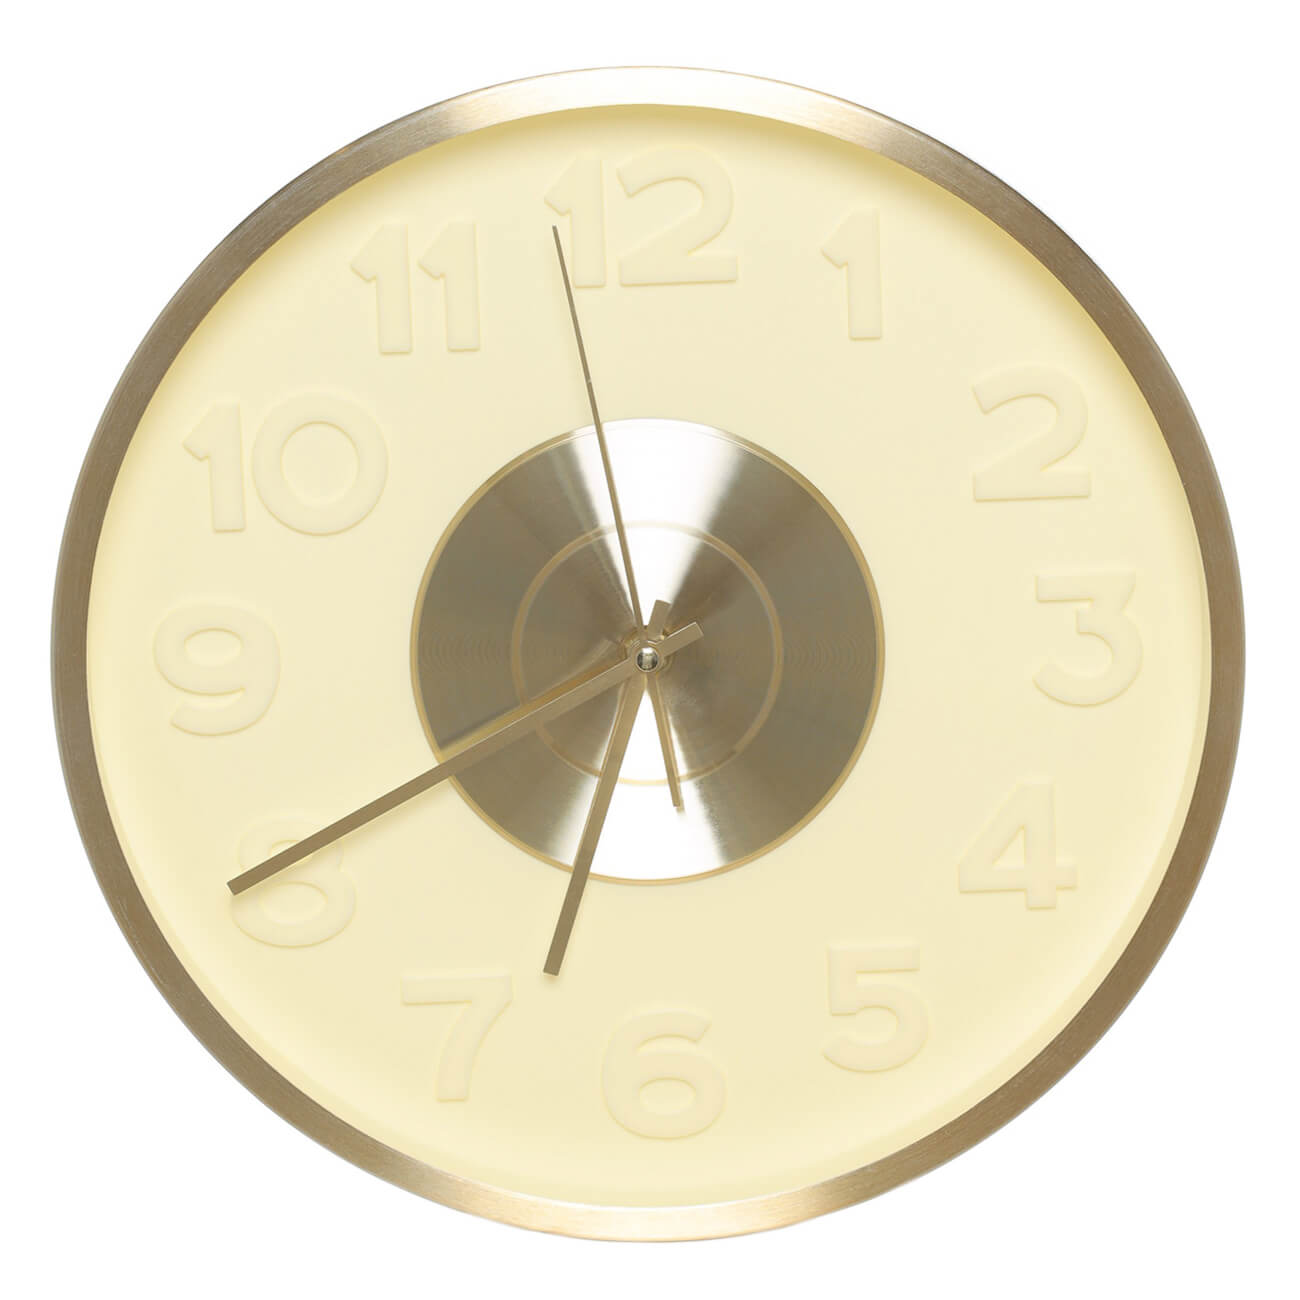 Часы настенные, 30 см, с подсветкой, пластик/стекло, круглые, золотистые, Fantastic gold часы электронные настенные с будильником 33 7 х 11 4 х 4 5 см красные цифры